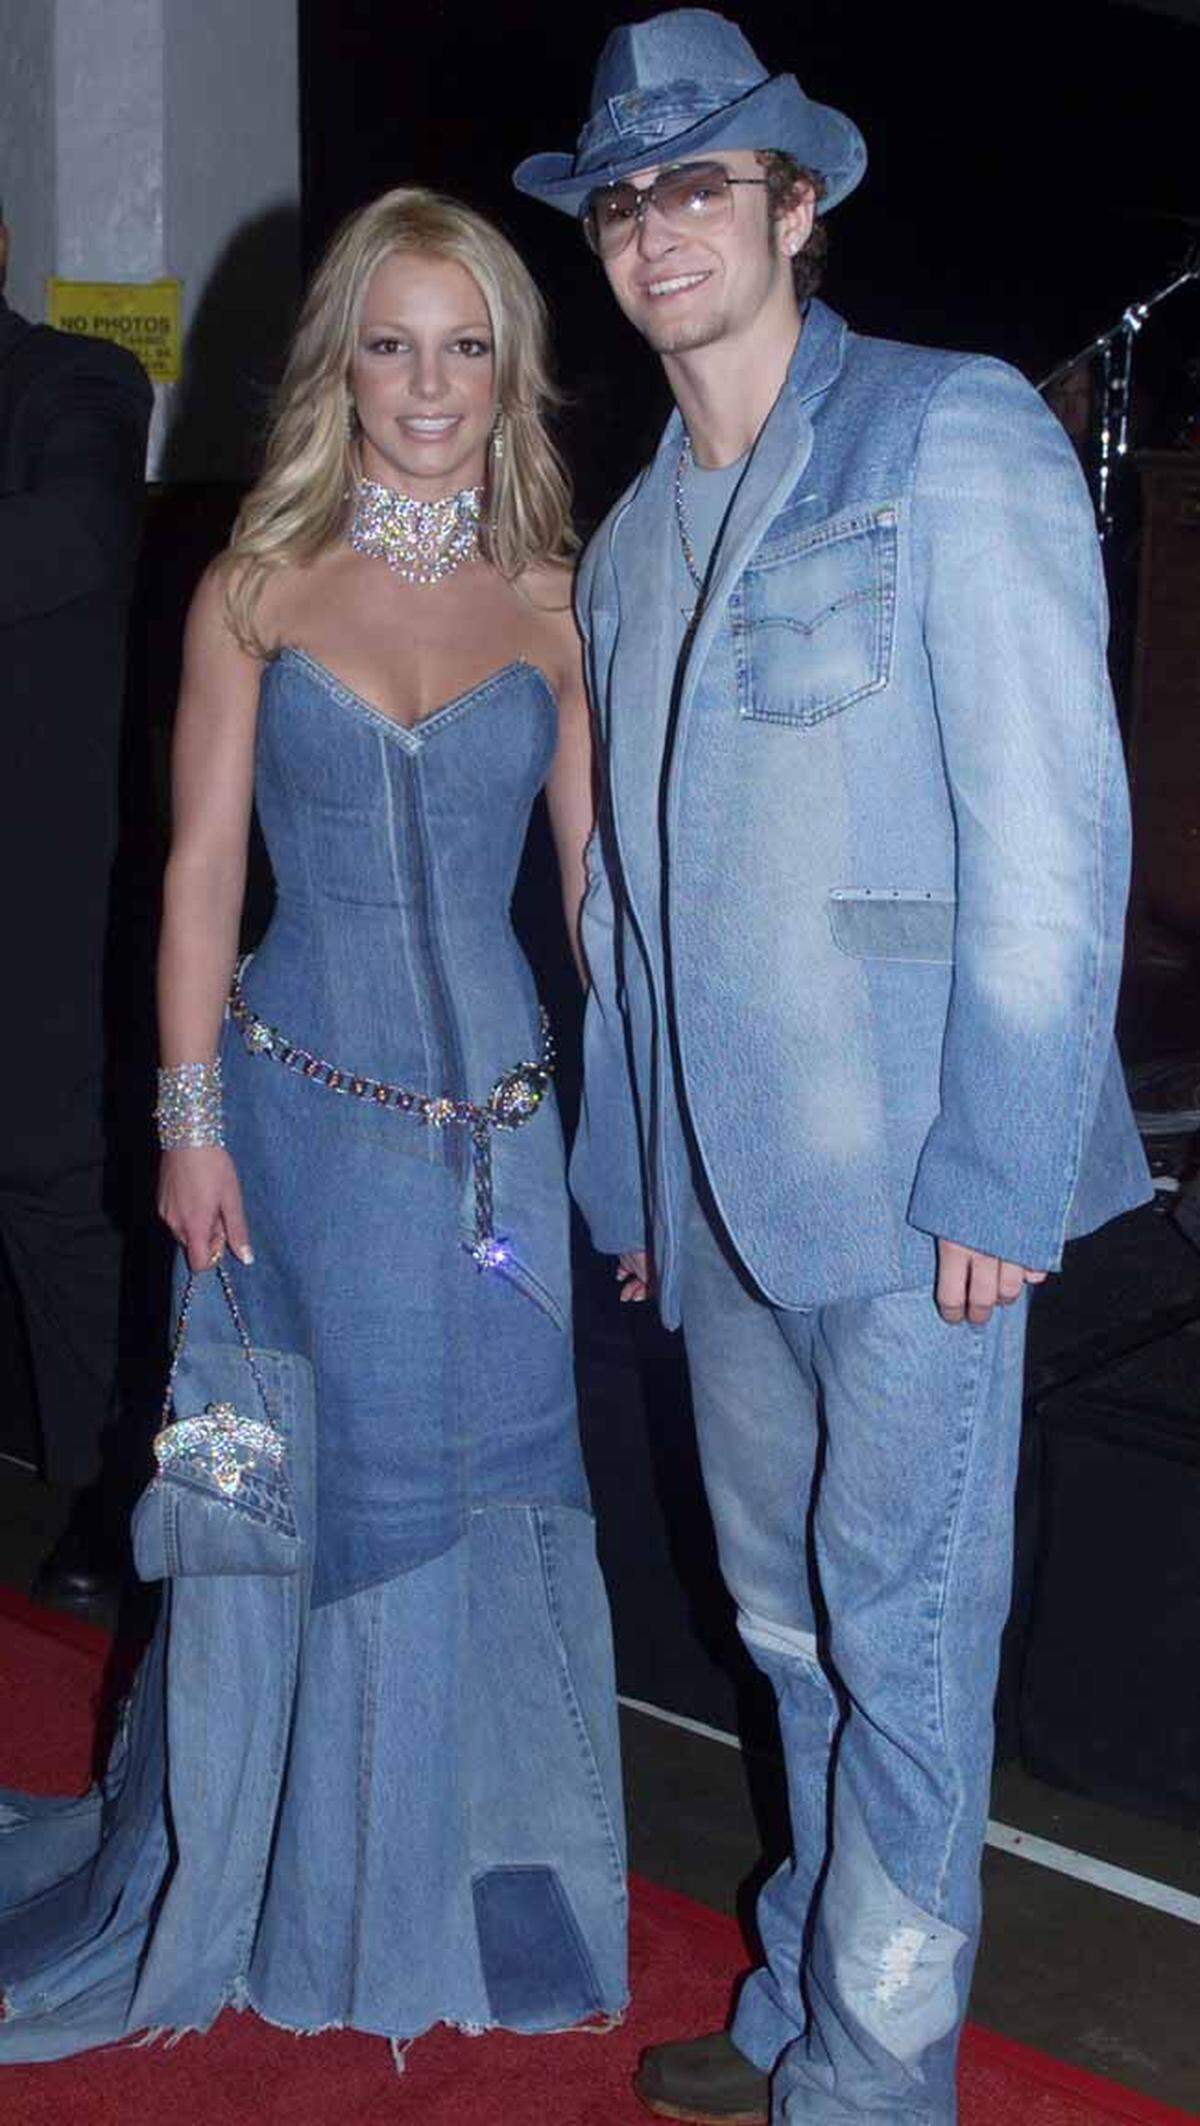 Britney Spears und Justin Timberlake zeigten 2001 im Partnerlook, wie sehr Jeans auf Jeans damals im Trend lagen. Das gleiche Outfit wird so schnell wohl nicht wieder der Öffentlichkeit gezeigt, Denim von Kopf bis Fuß trägt man aber wieder.  